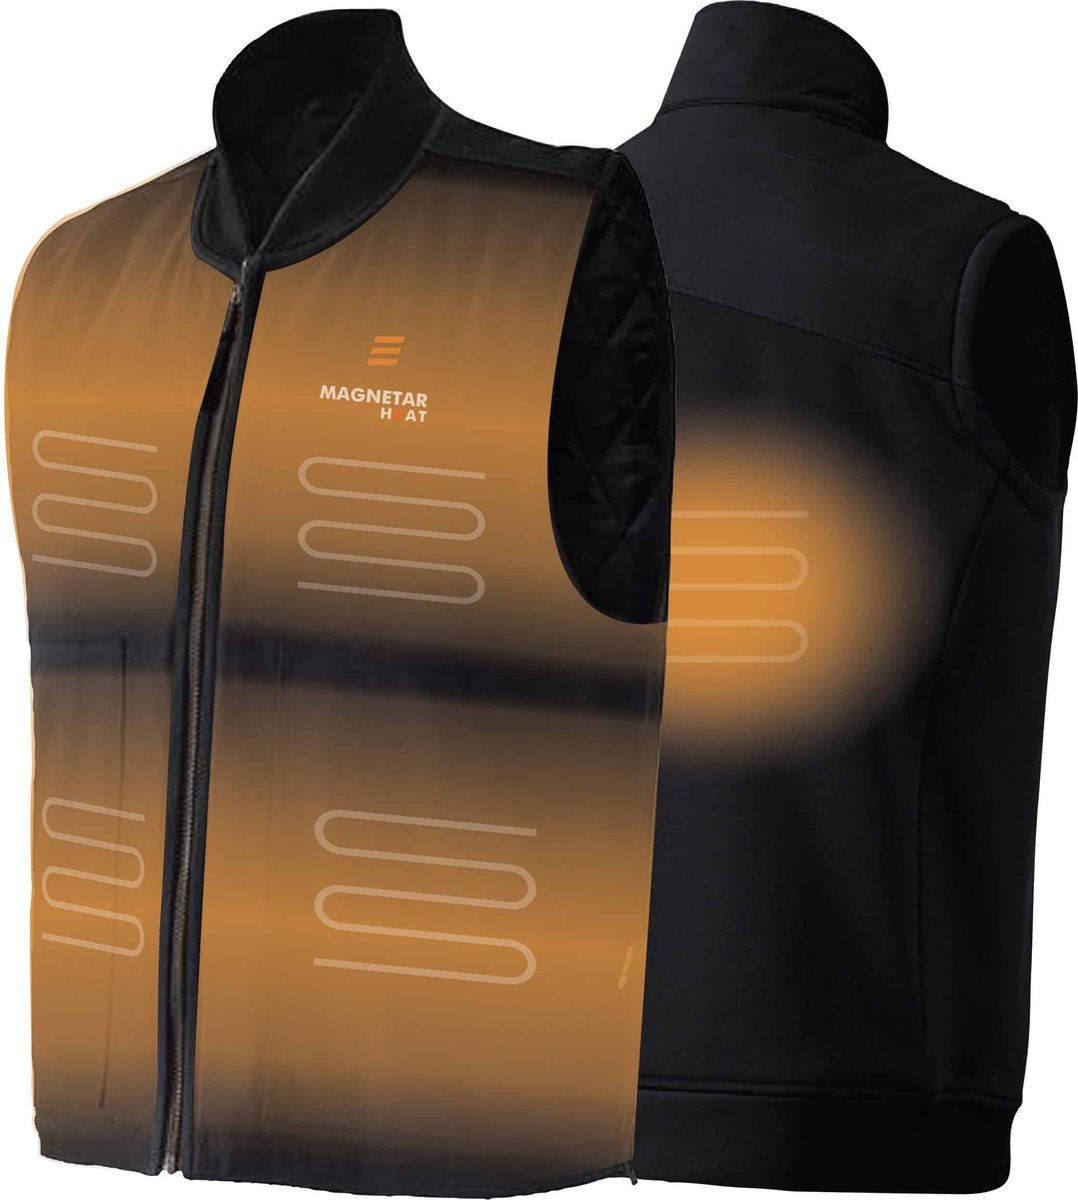 Verwarmde Werk Bodywarmer - Magnetar Heat - Verwarmd Vest - Zwart - Voor Mannen en Vrouwen - Maat L - Incl. Powerbank en oplader kabel - Unisex - Geschikt voor in de Werkplaats